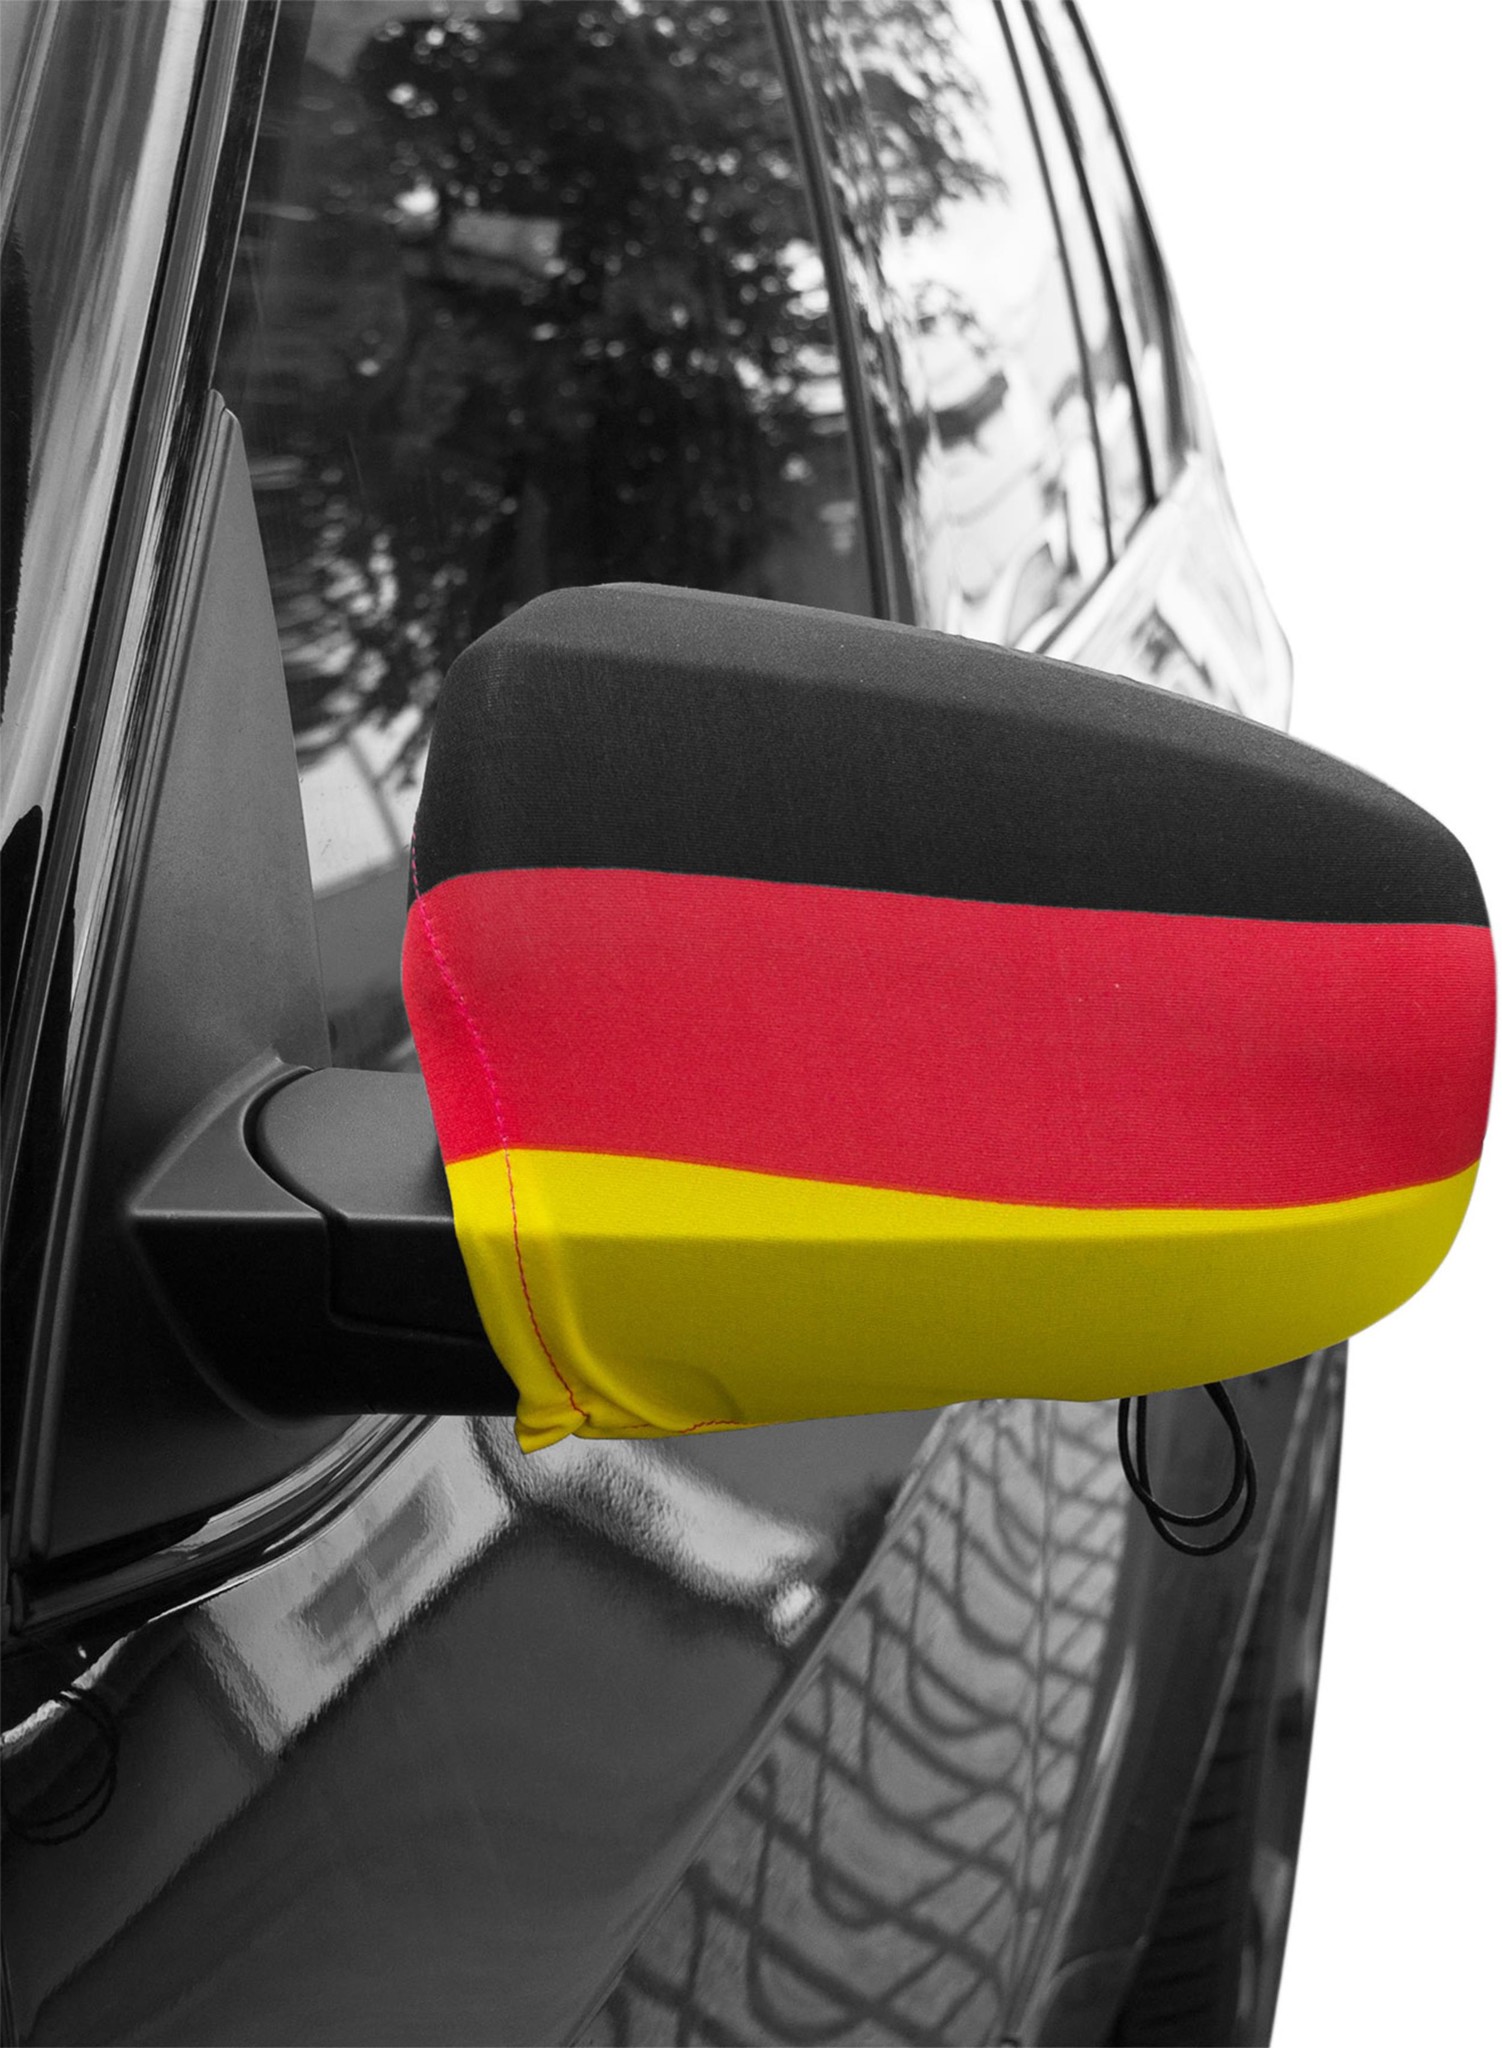 Bild von Auto-Außenspiegel Spiegelfahne Deutschland